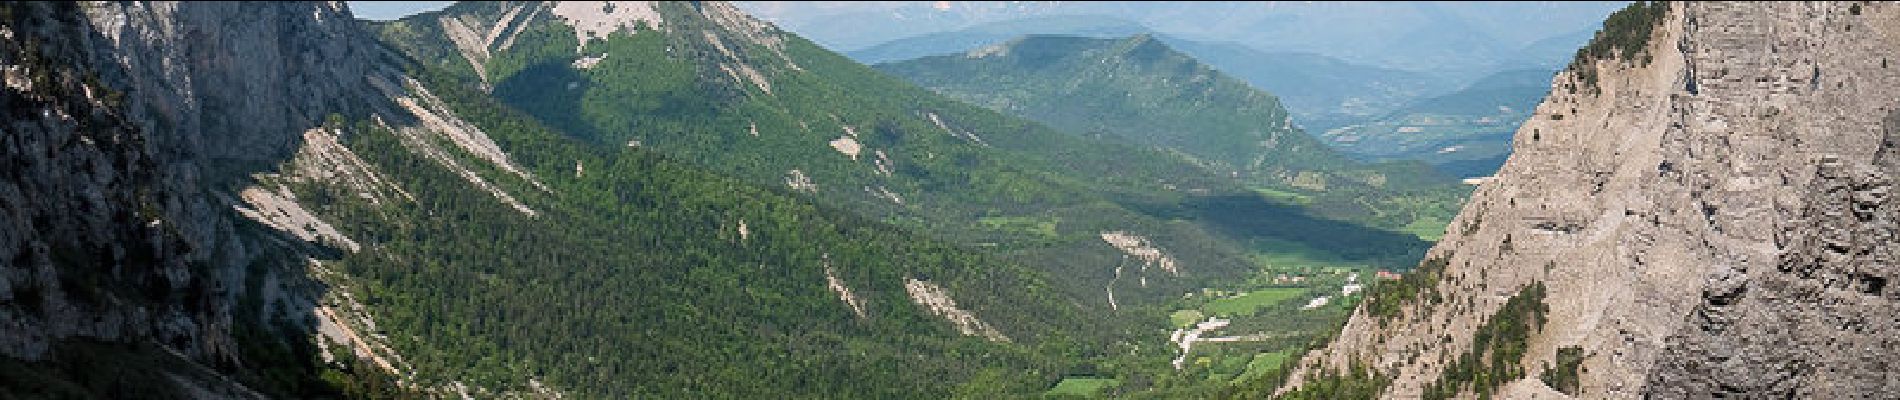 Randonnée Marche Chichilianne - Traversée des Rochers du Parquet, 2024m - Photo